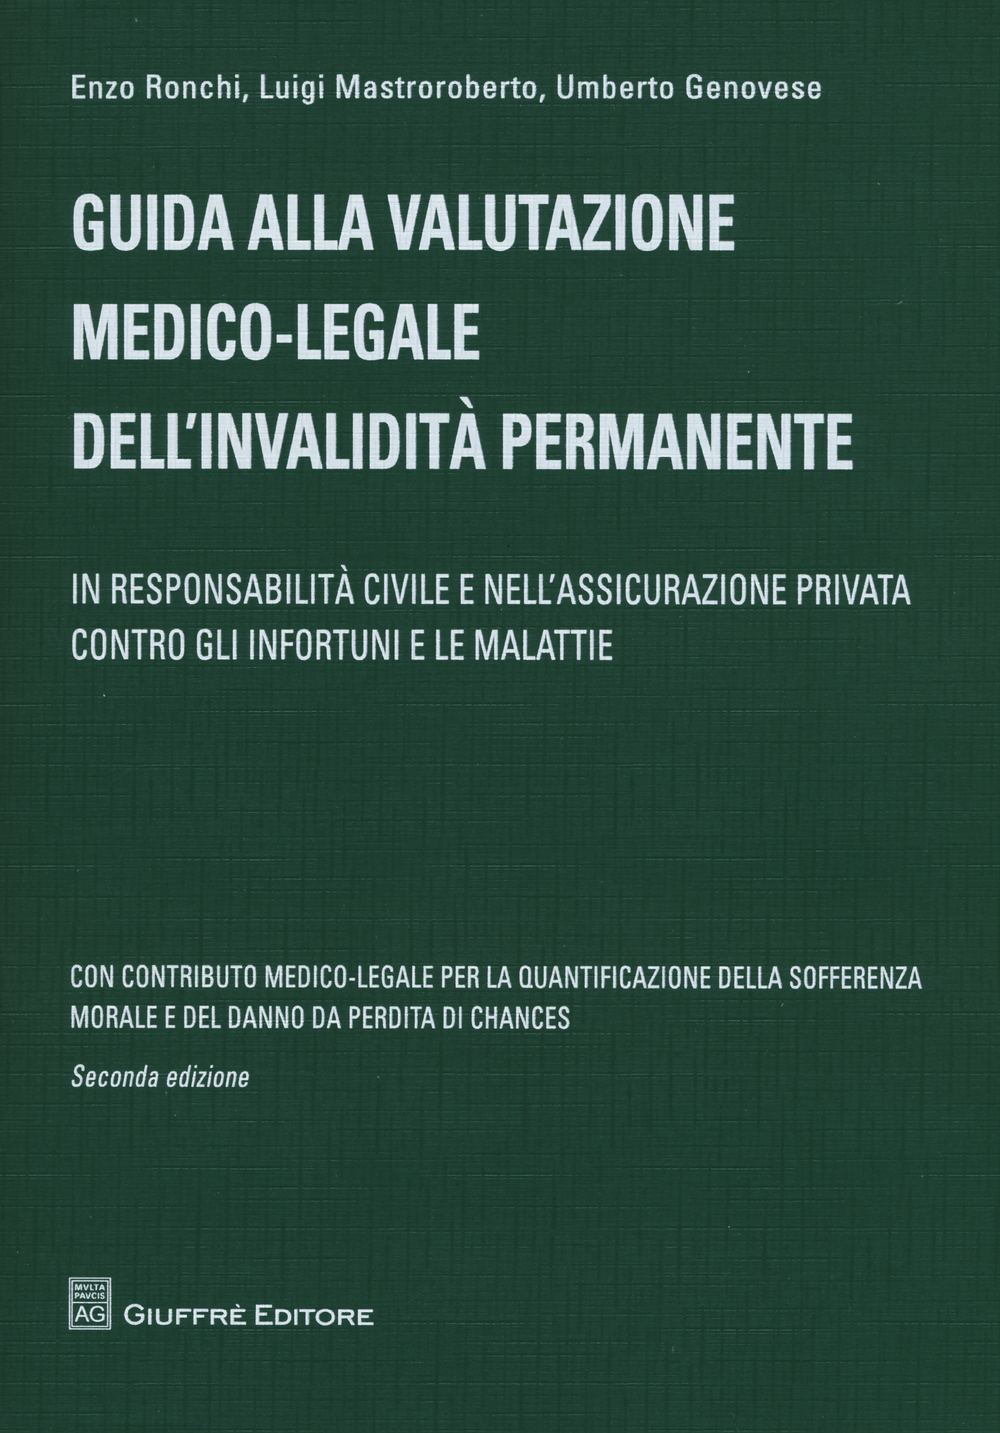 Guida alla valutazione medico-legale dell'invalidità permanente. In responsabilità civile e nell'assicurazione privata contro gli infortuni e le malattie